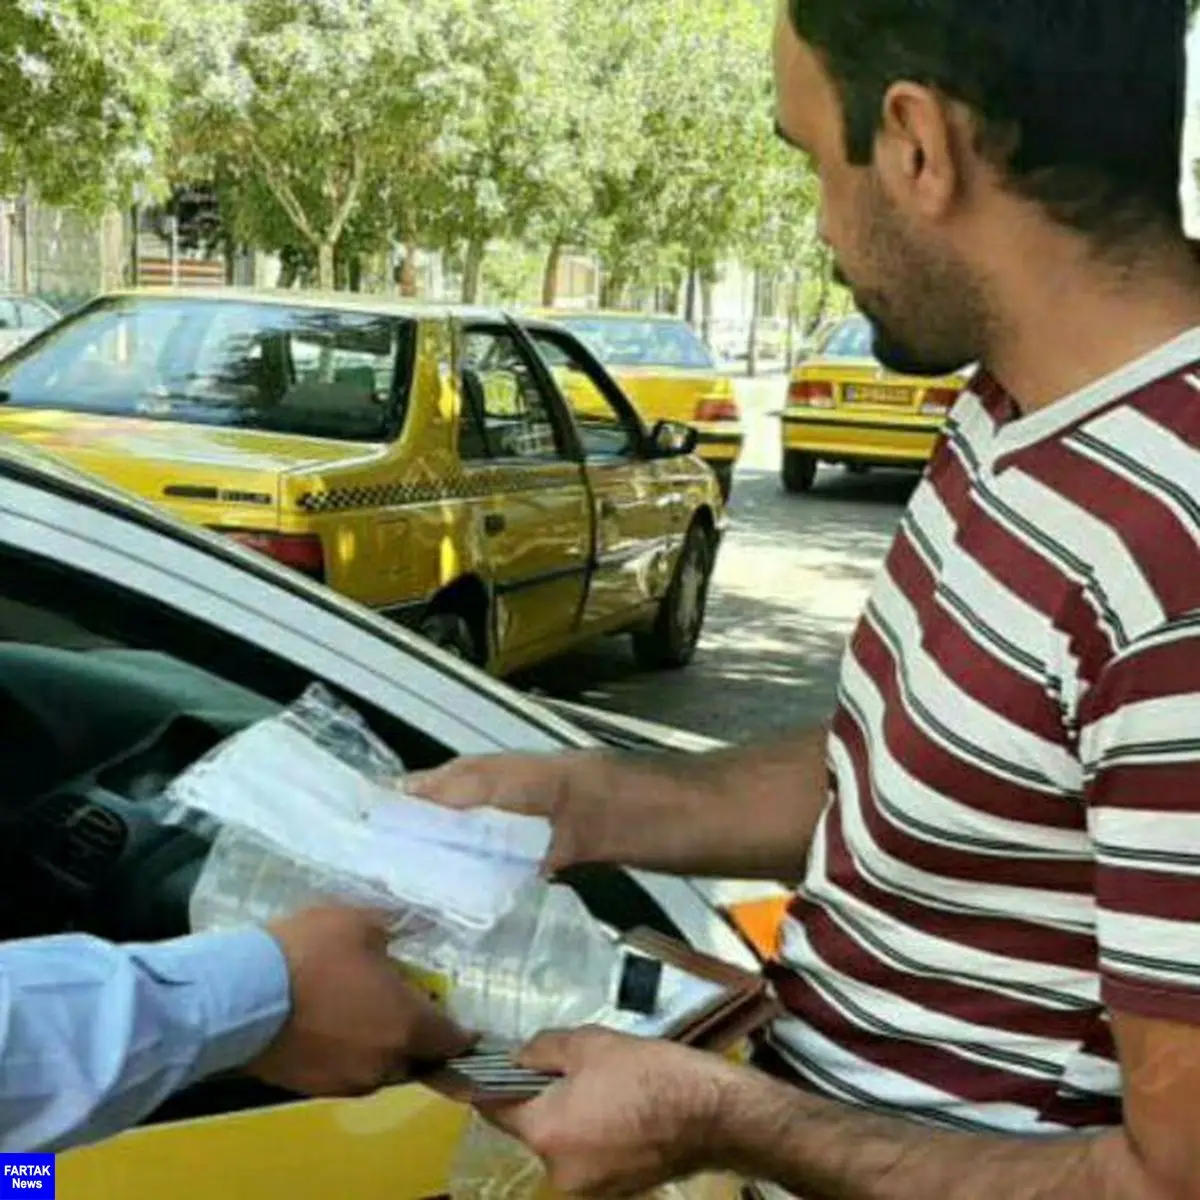 مرحله سوم توزیع محلول ضدعفونی و ماسک بین رانندگان تاکسی و اتوبوس شهر کرمانشاه